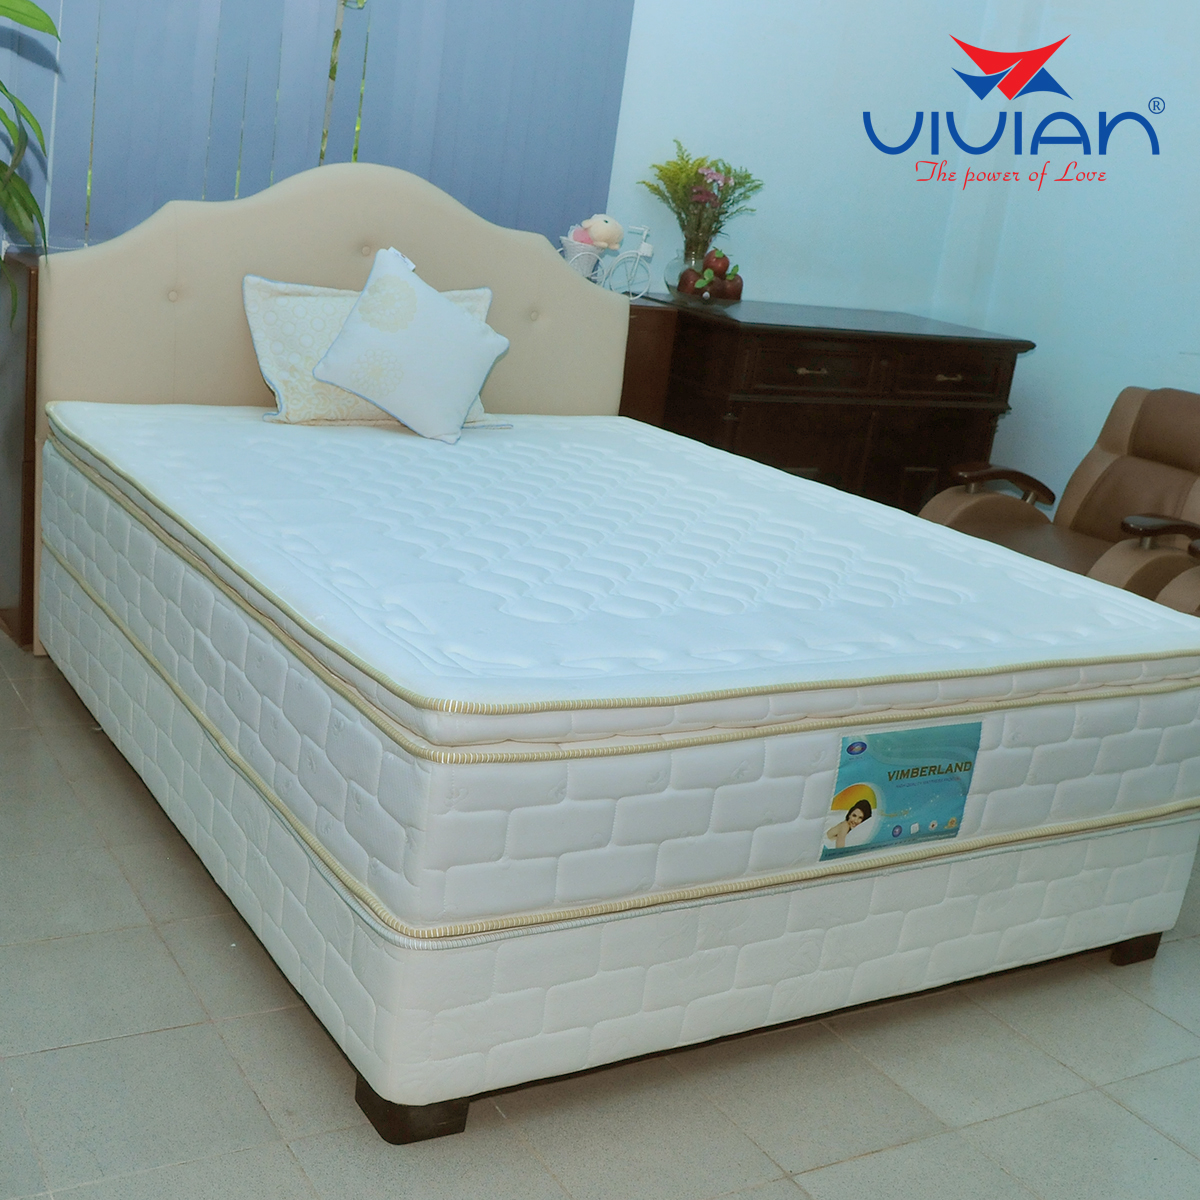 Vivian sẽ mang đến giấc ngủ ngon và sâu giấc cho bạn và gia đình mình